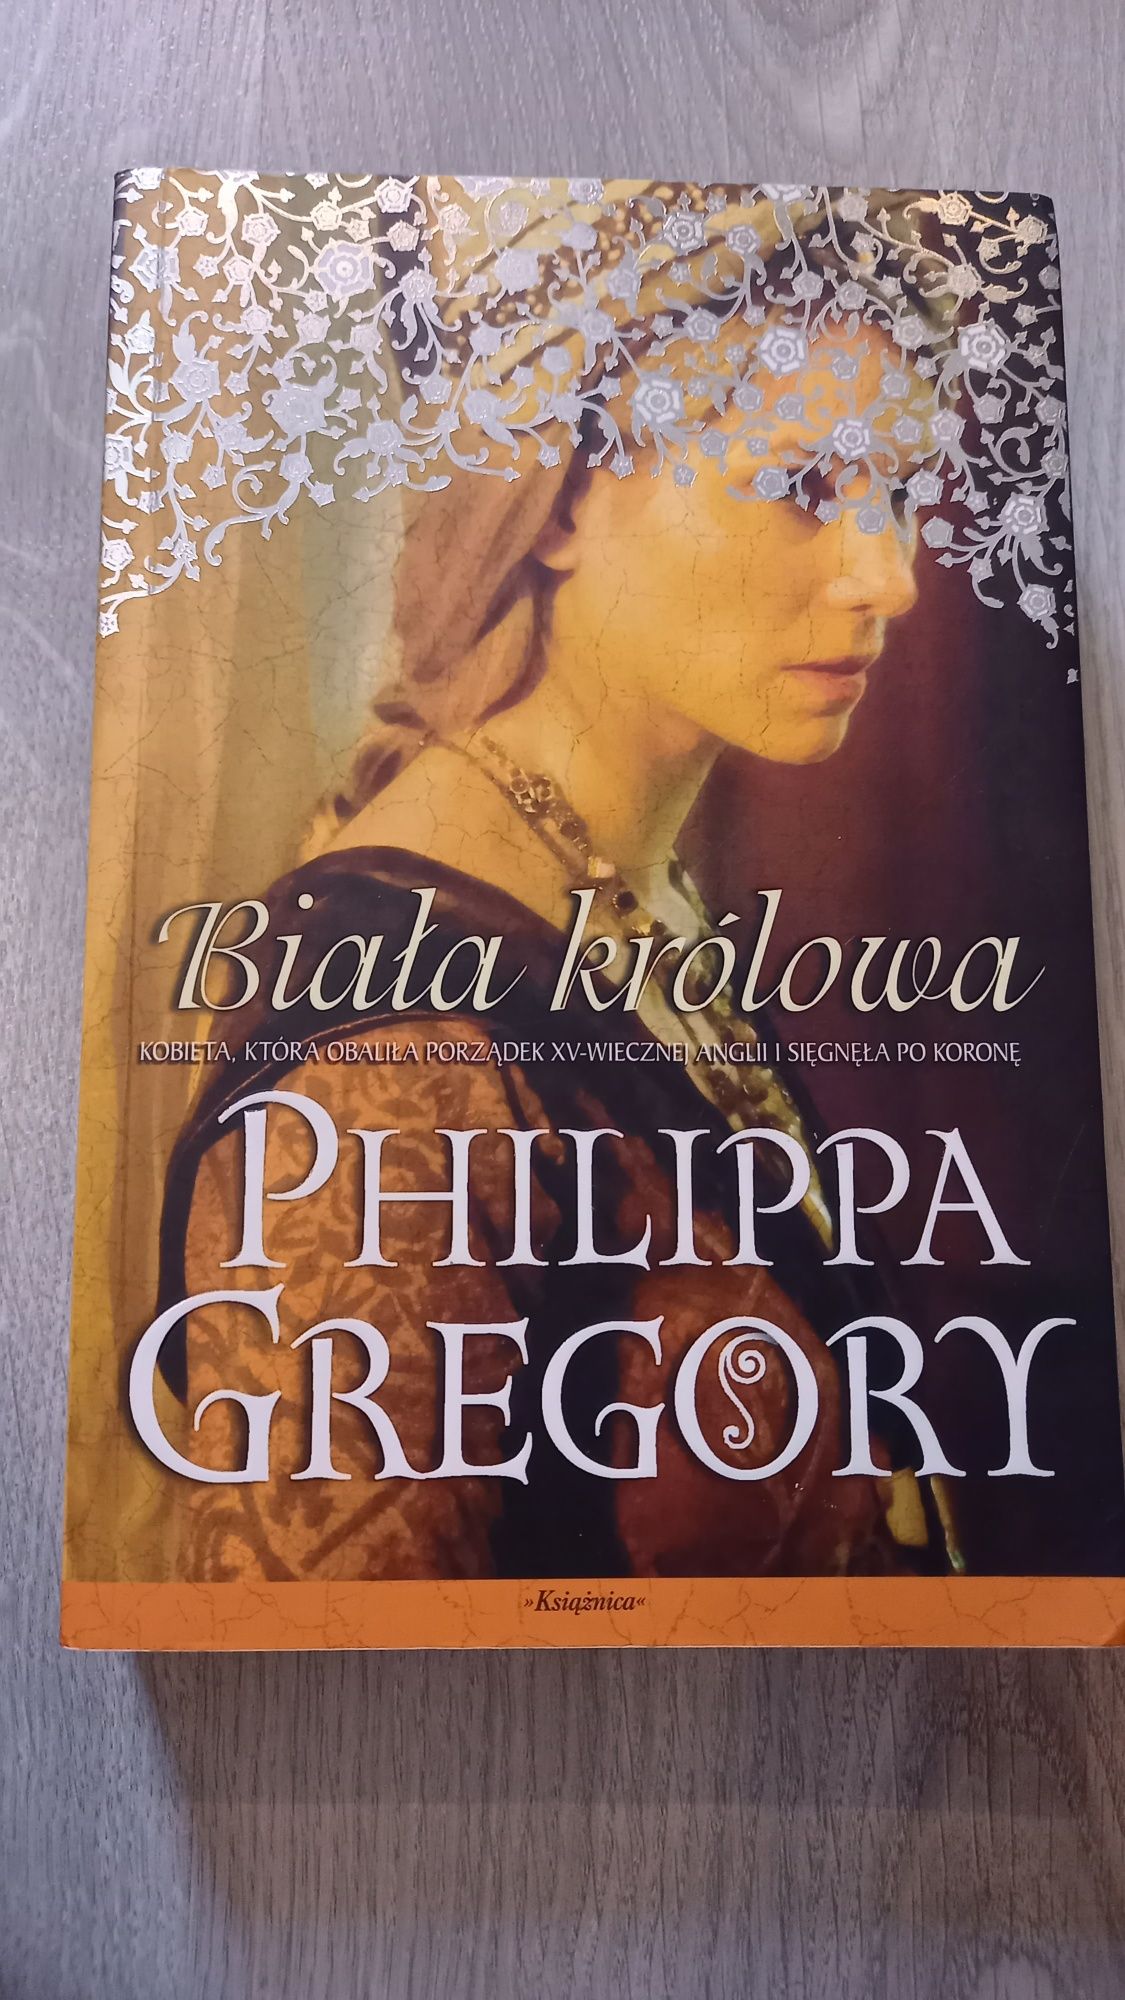 Philippa Gregory dwie królowe, czerwona królowa i biała królowaa